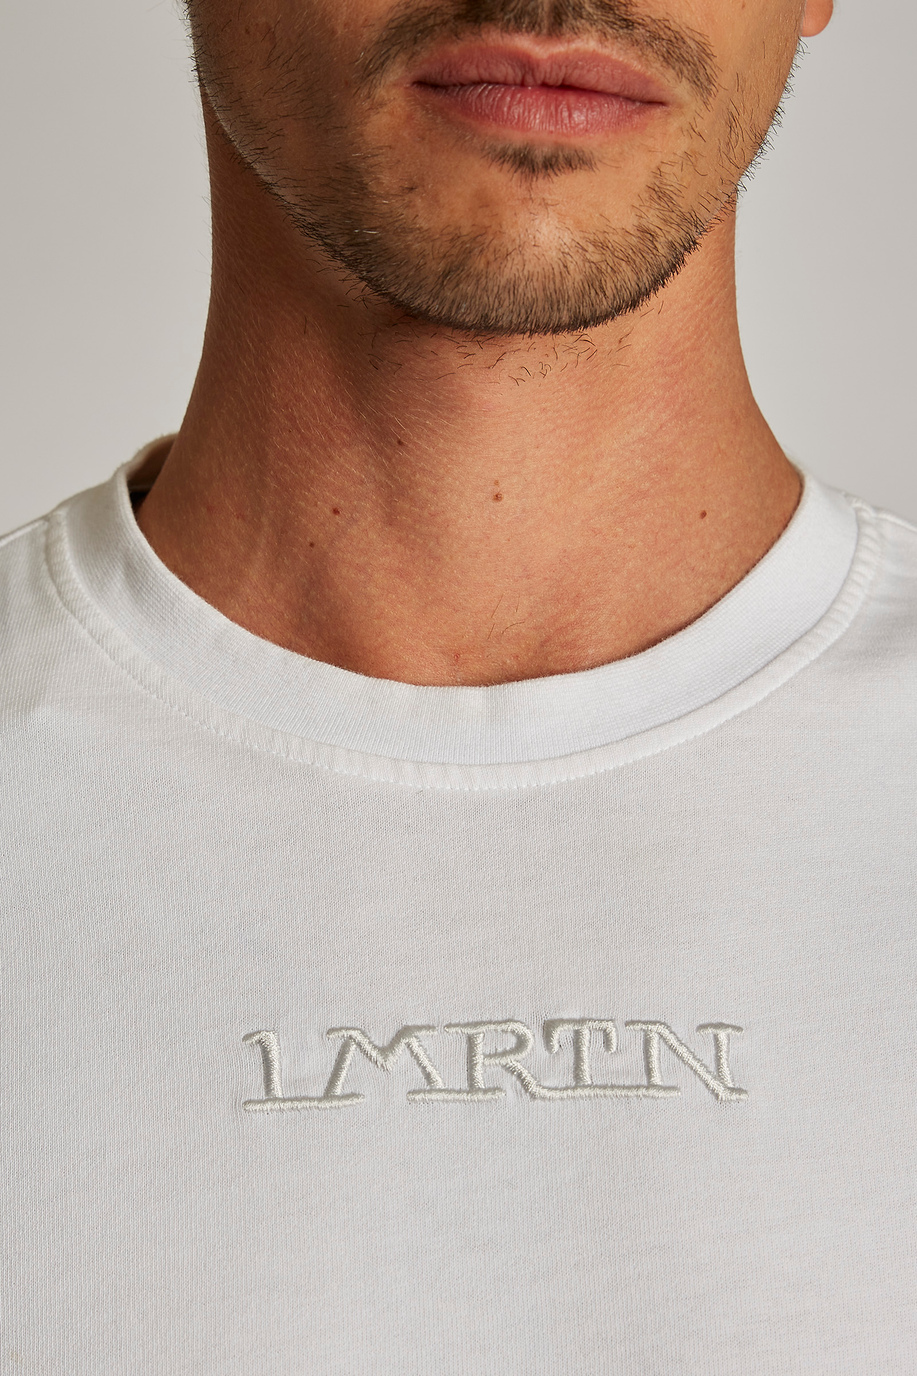 Herren-T-Shirt mit kurzem Arm aus Baumwolle, oversized Modell